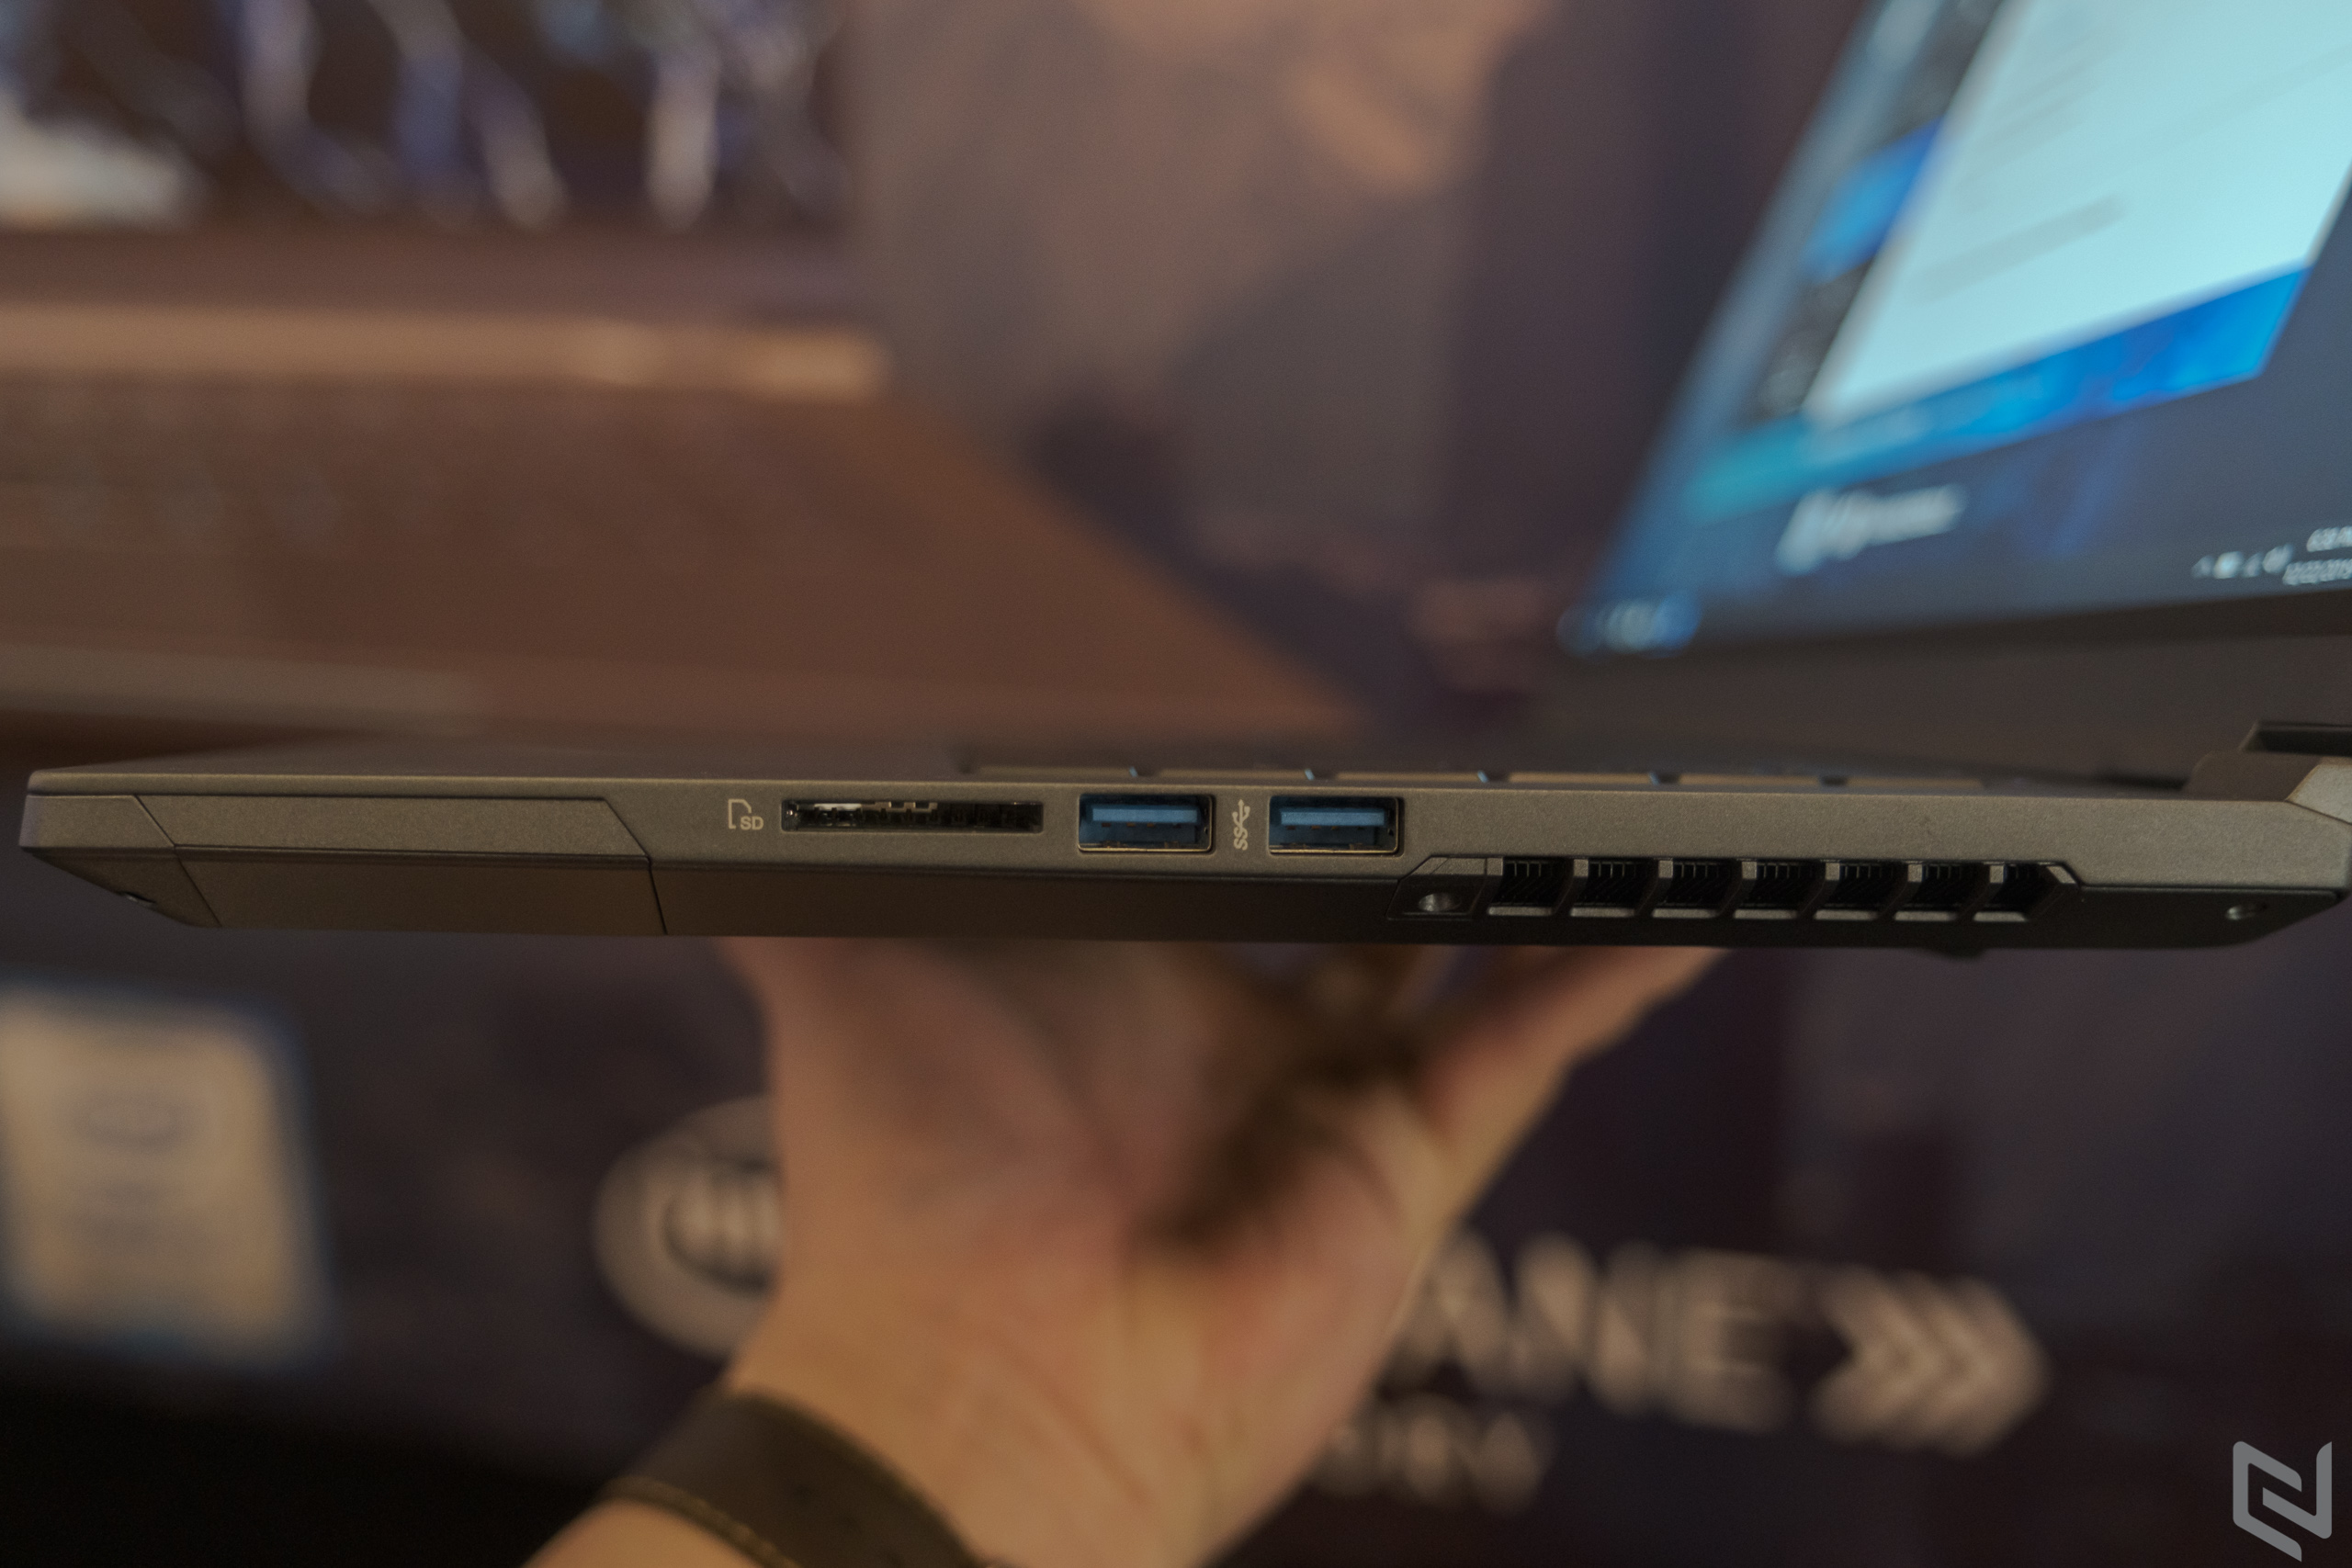 Intel kết hợp cùng VGS ra mắt laptop gaming cao cấp Imperium, bảo hành 1 đổi 1 bất kì lỗi, giá từ 37.4 triệu đồng